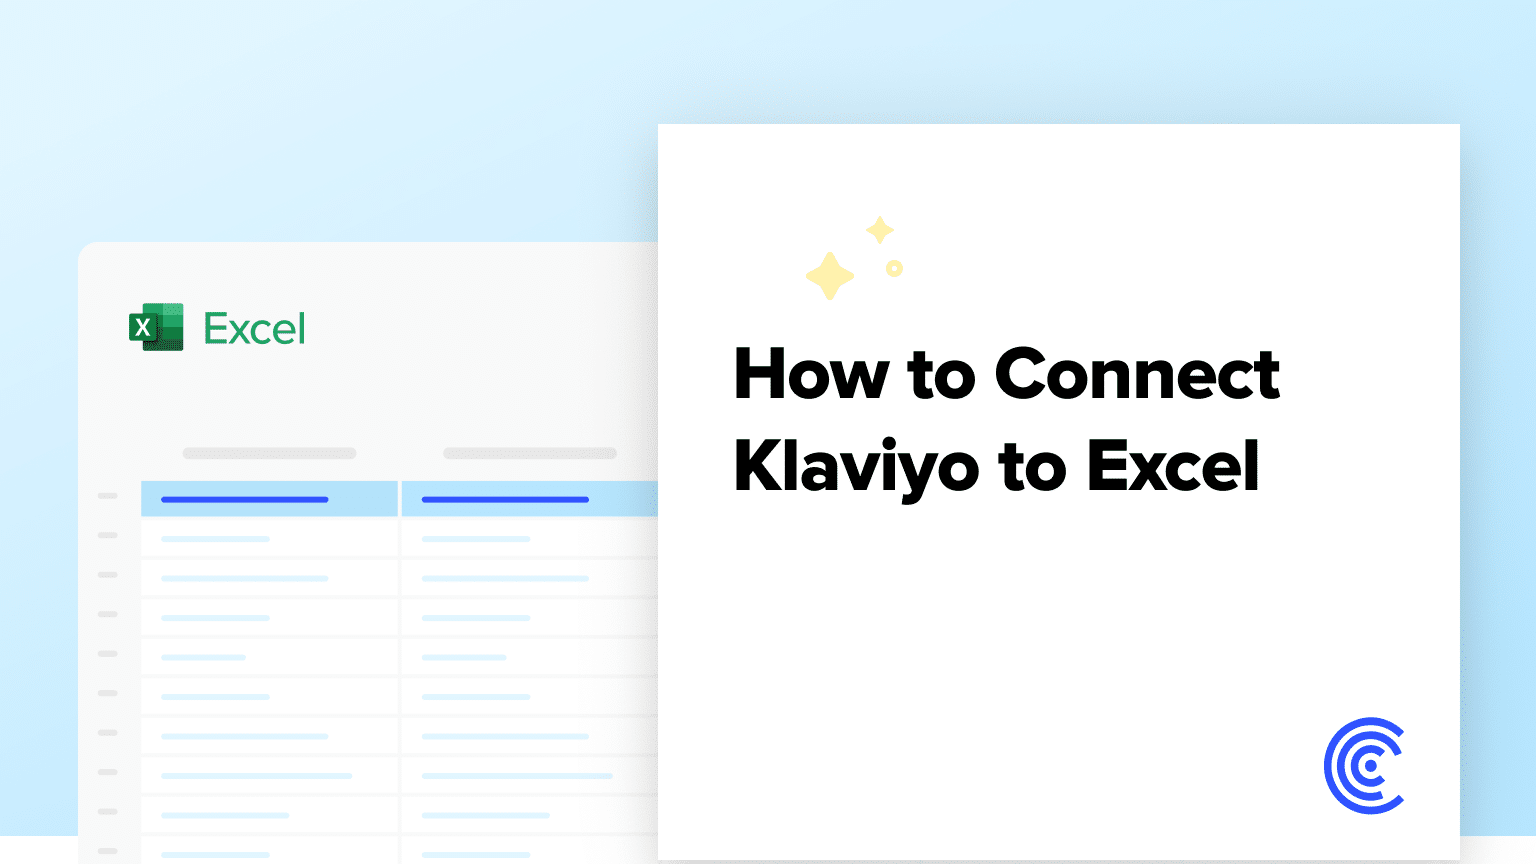 Connect Klaviyo to Excel